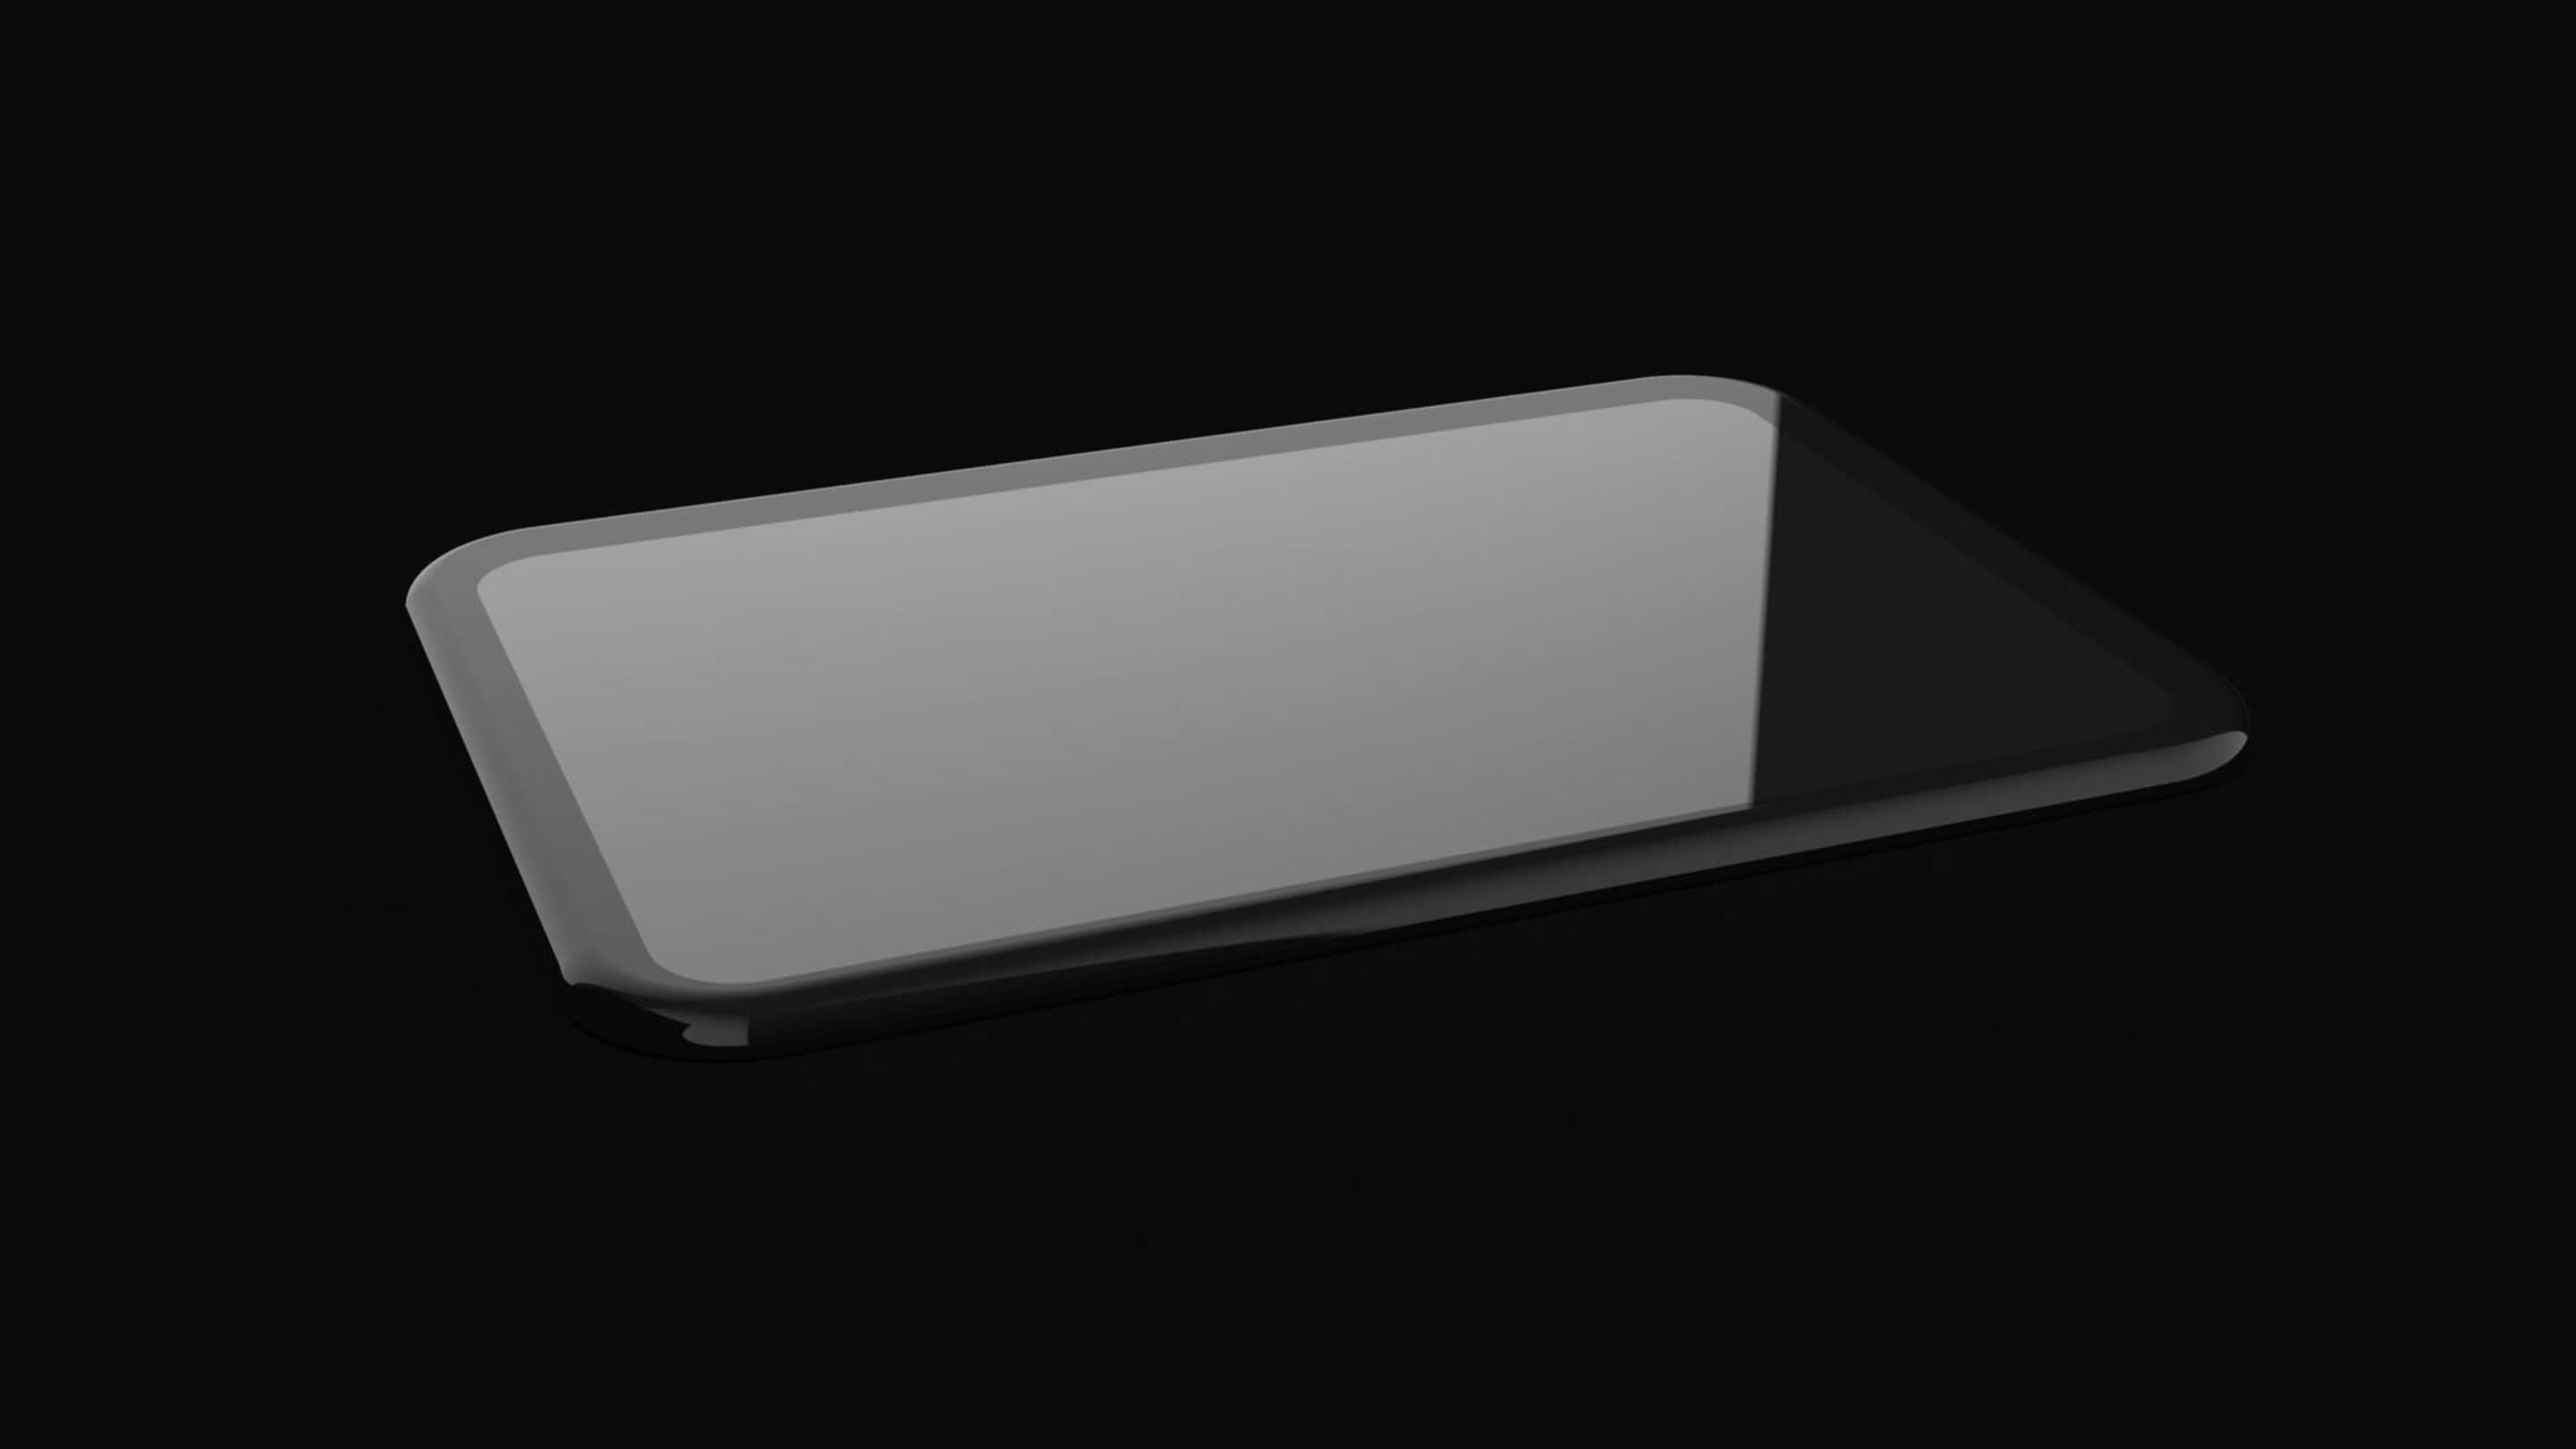 Impactinator® Glass - lasi pyöreä reunan kierto musta musta suorakaiteen muotoinen esine mustalla taustalla